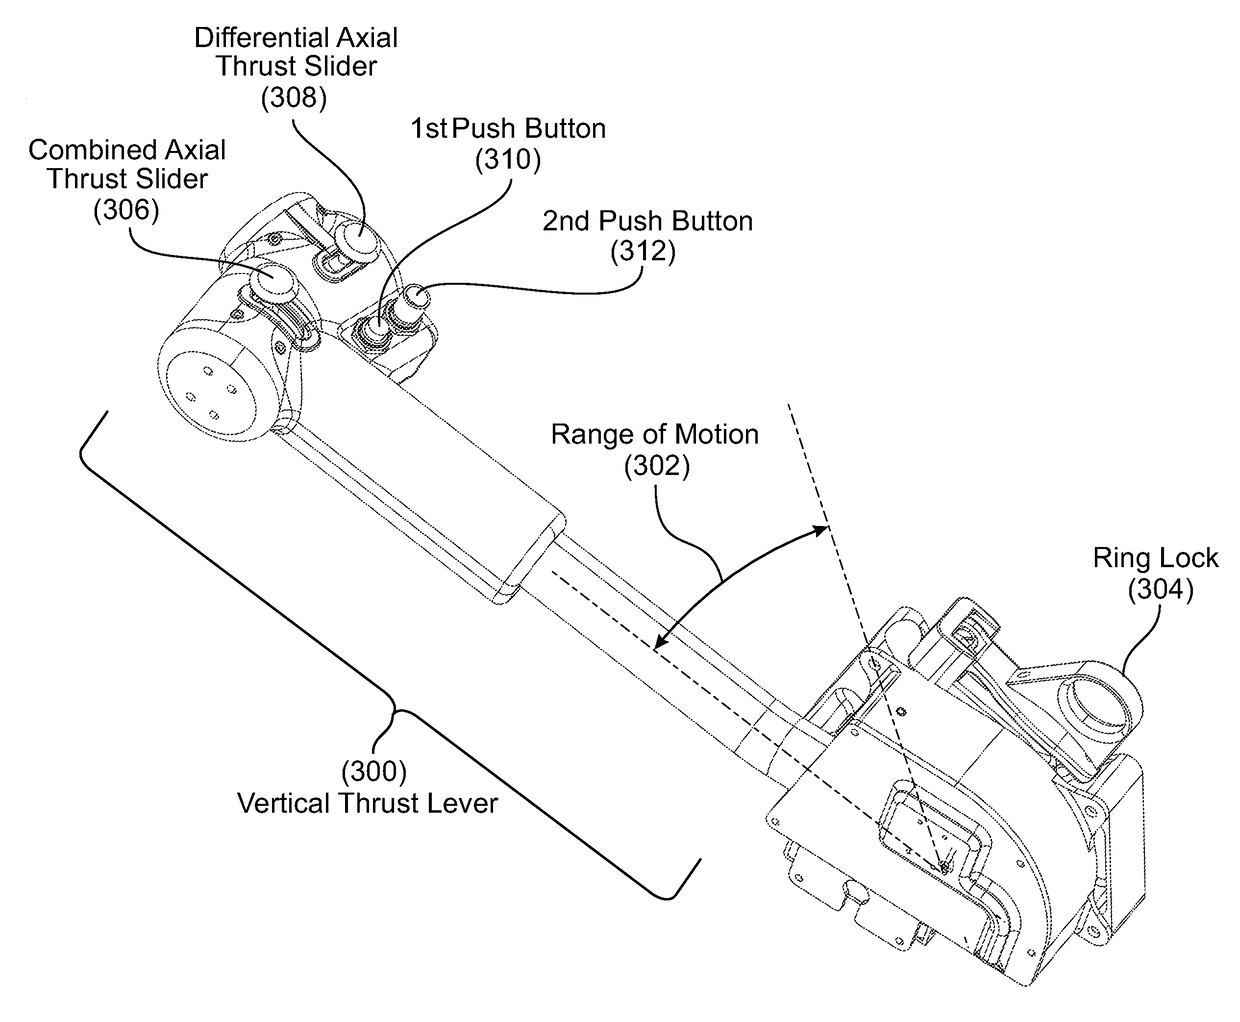 Vertical thrust lever